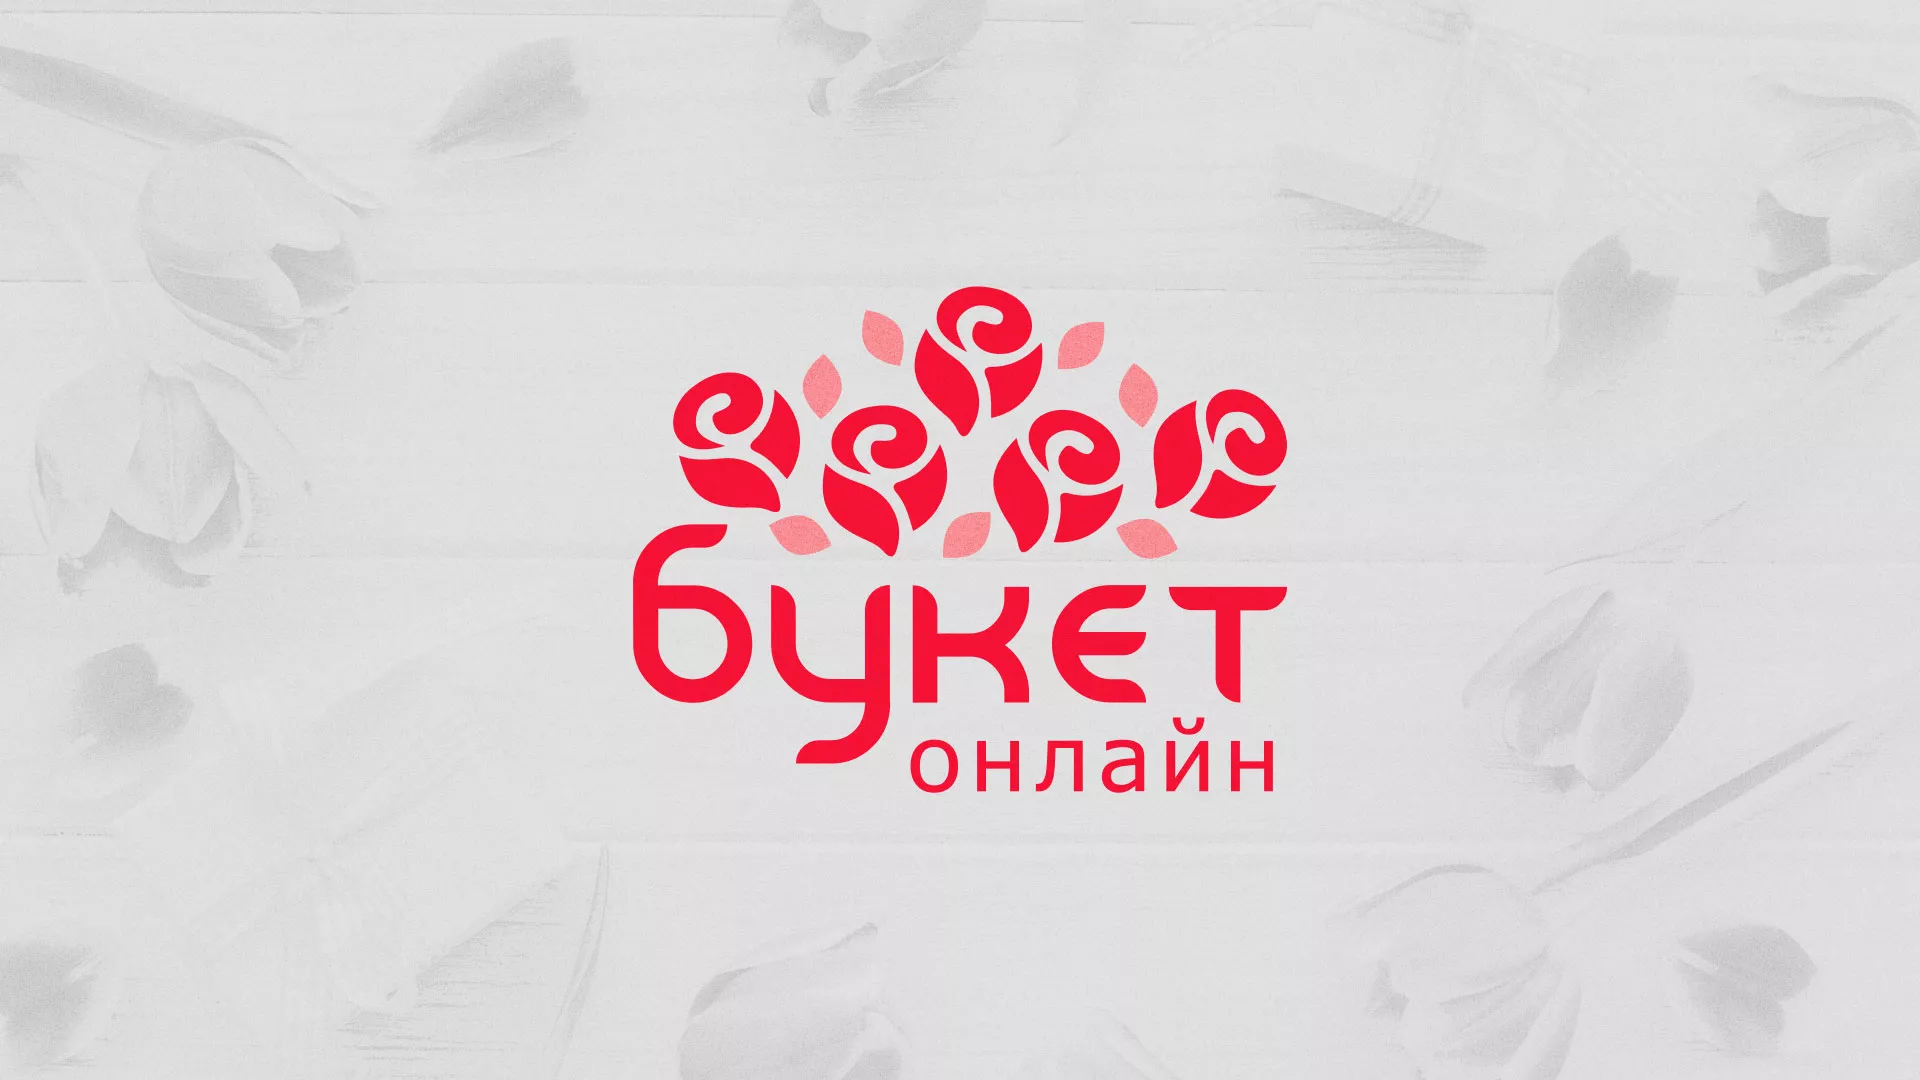 Создание интернет-магазина «Букет-онлайн» по цветам в Александрове